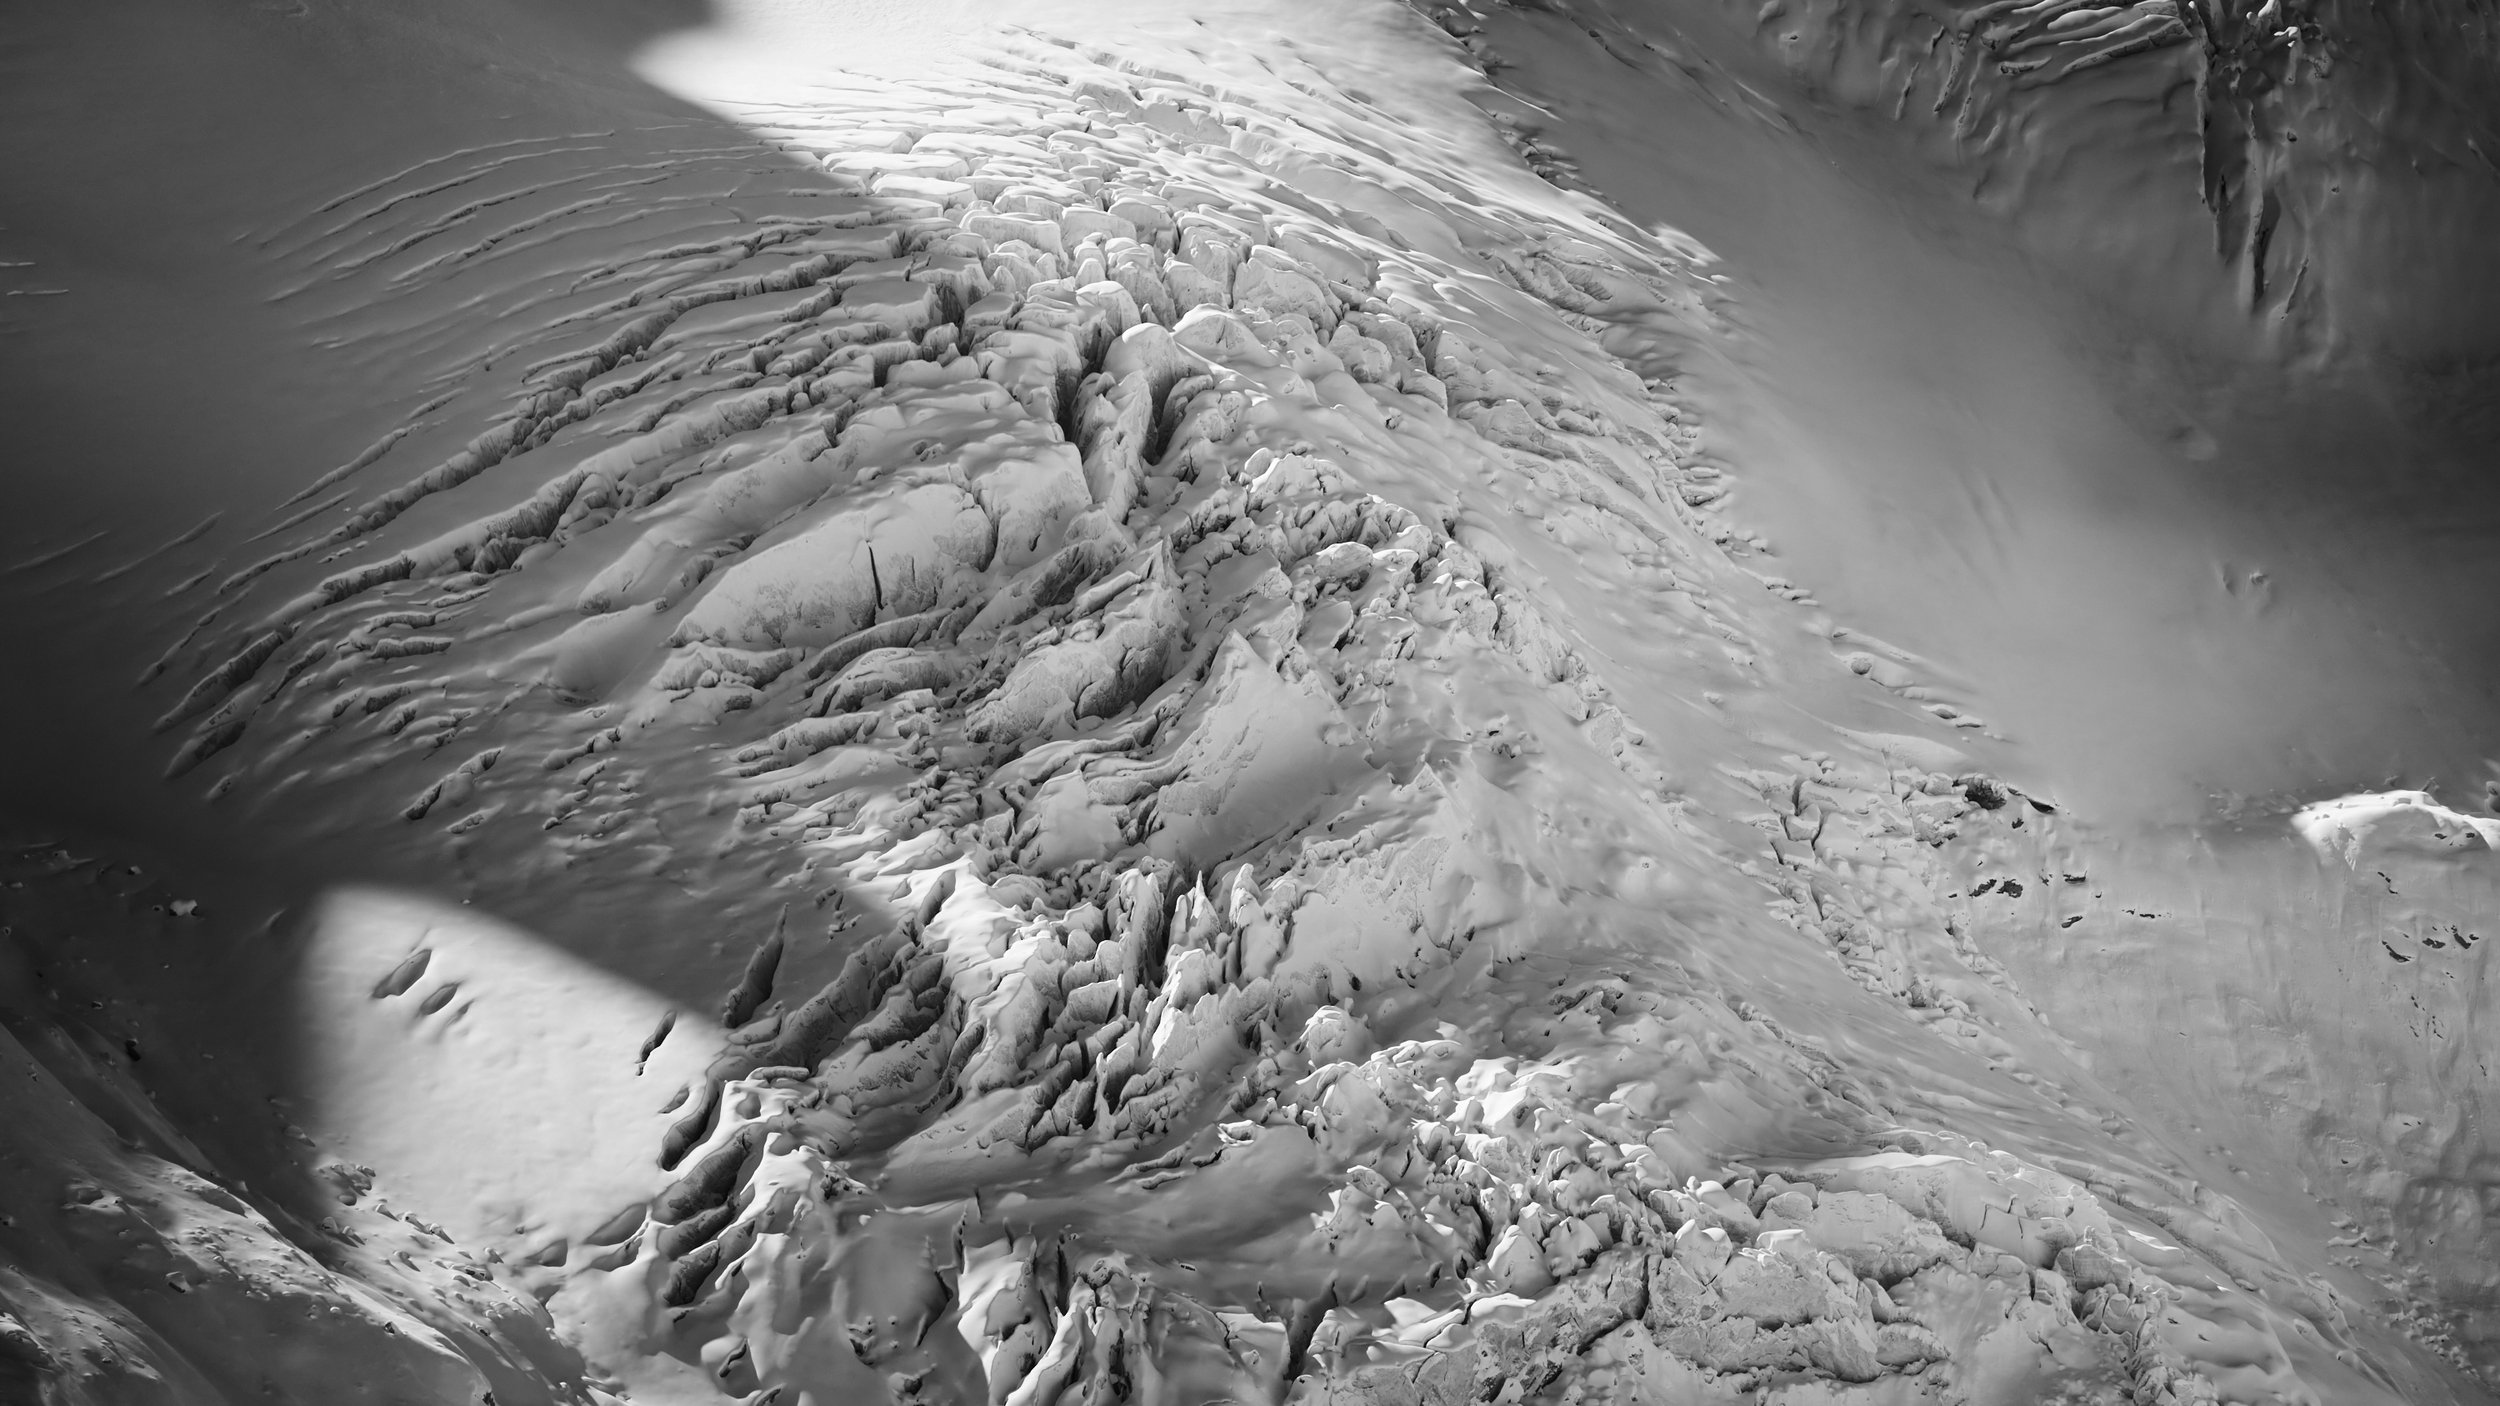 Engadin, Bernina, Tschierva & Rosegg Gletschereisskulpturen, fotografiert vom Schweizer Fine art Fotografen Jürg Kaufmann während der zahlreichen Expeditionen auf den Gletschern in den Schweizer Alpen.